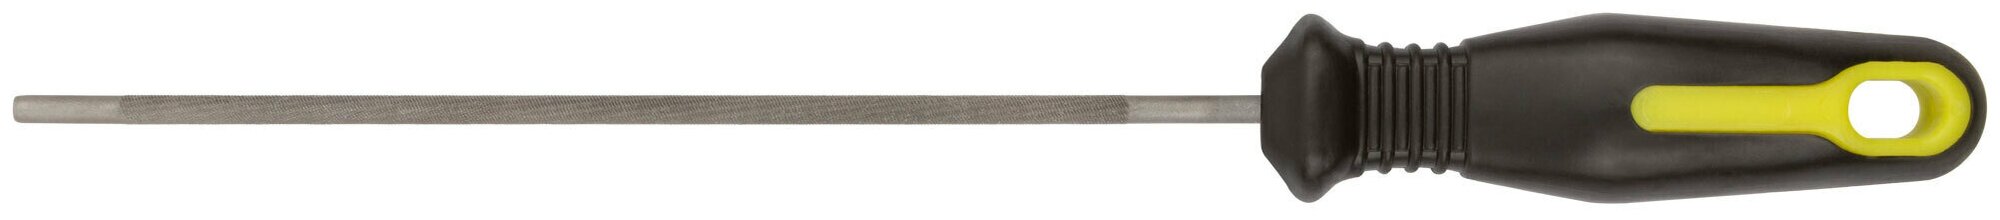 Напильник для заточки цепей бензопил круглый, с прорезиненной ручкой 200 х 4,8 мм 42813